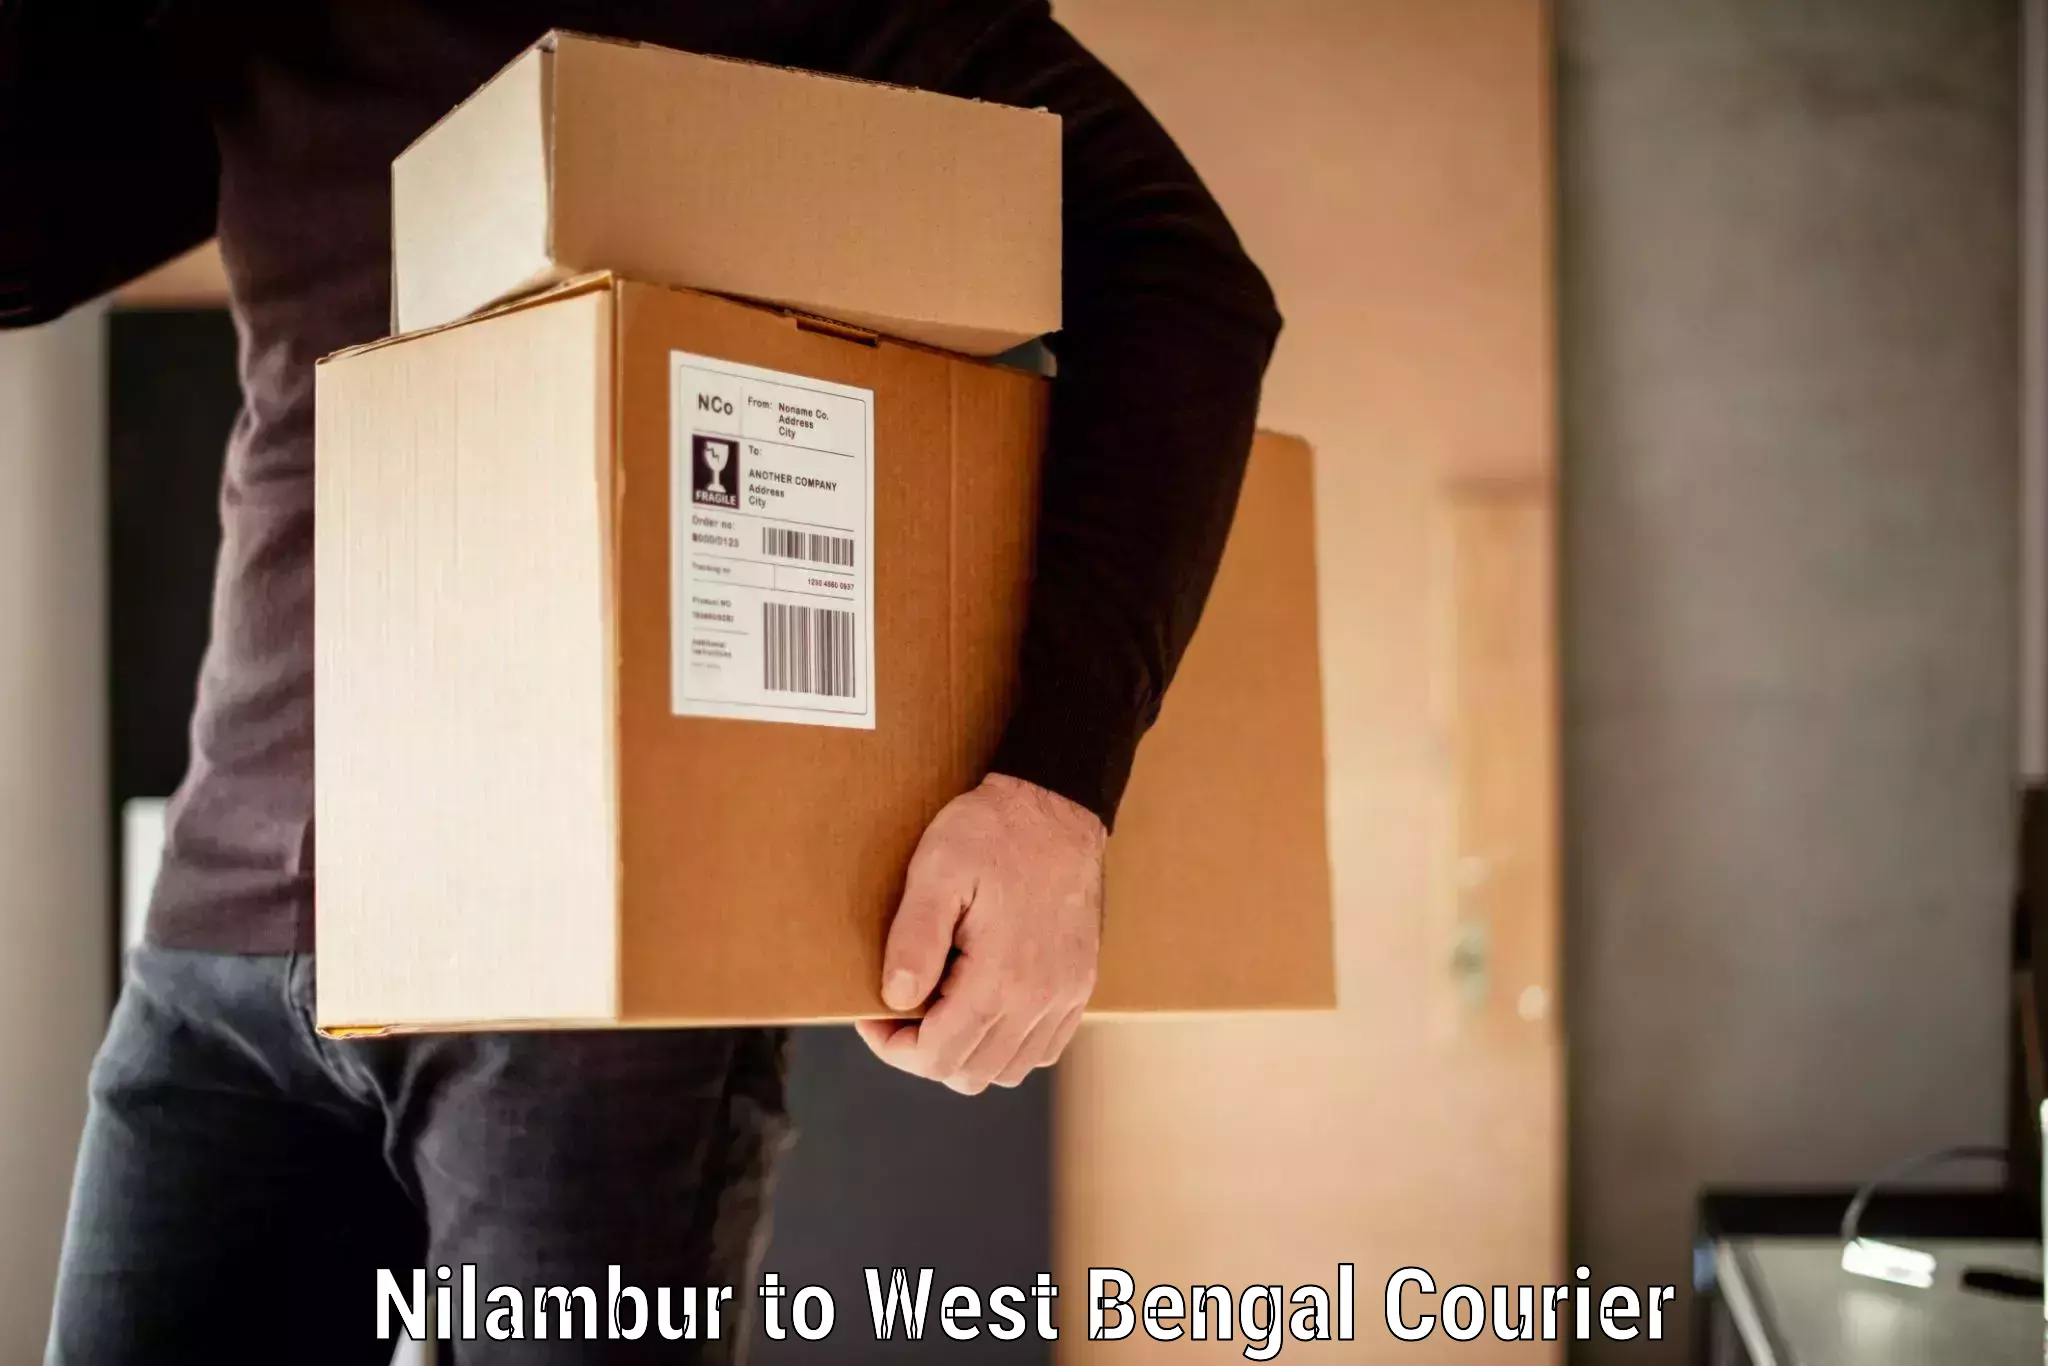 Baggage shipping service Nilambur to South 24 Parganas